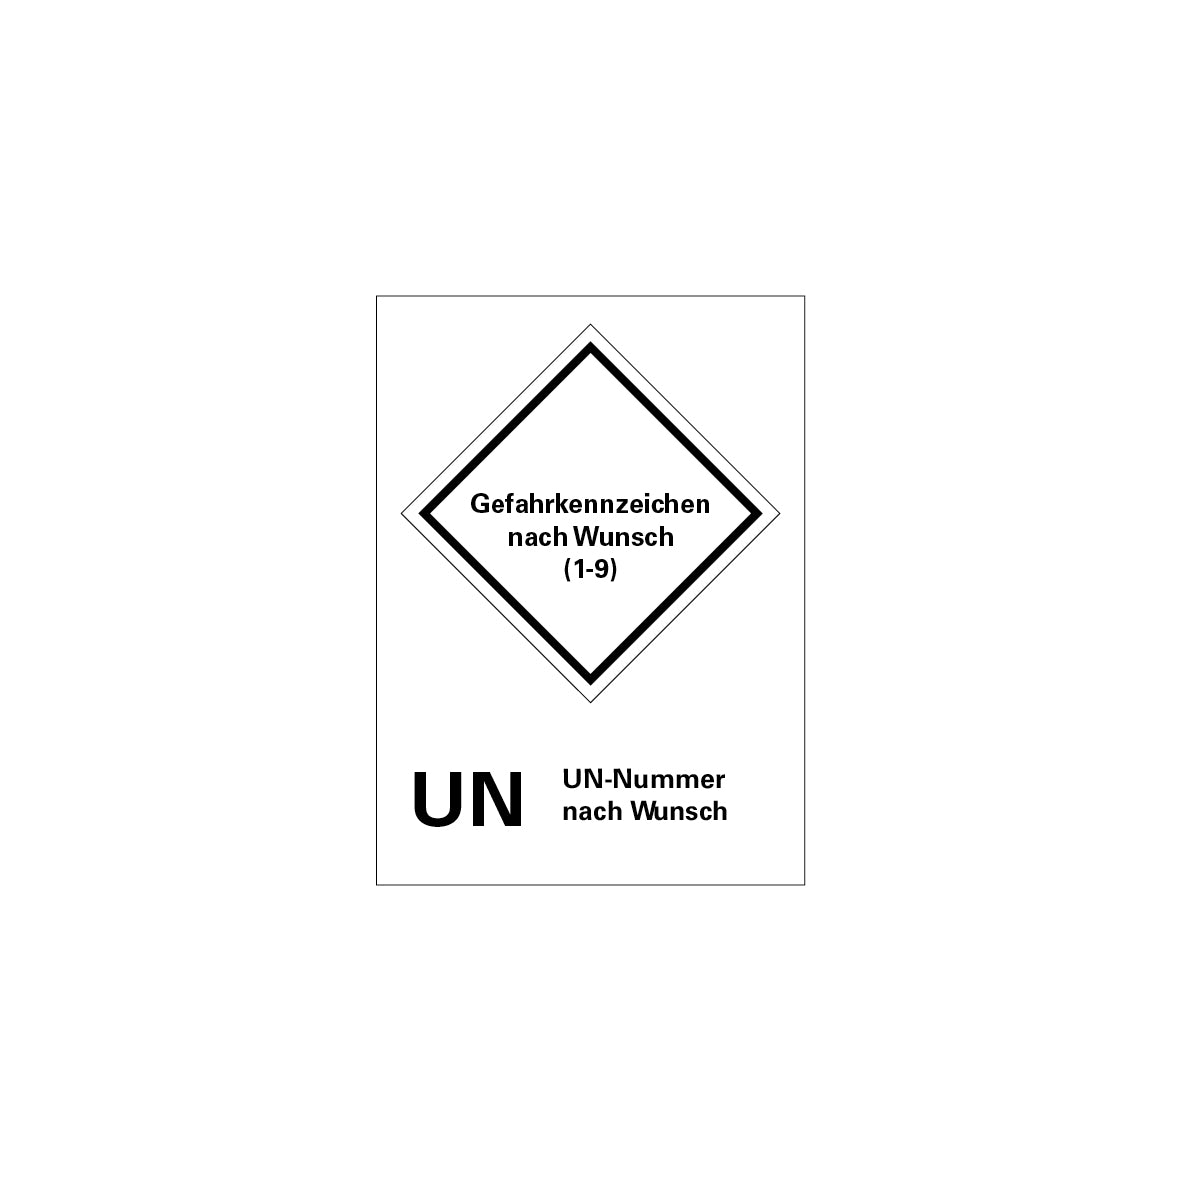 Gefahrgut UN, 5.0174, 160 x 220 mm, VE = 50 Stk., Gefahrkennzeichn nach Wunsch mit UN-Nummer nach Wunsch